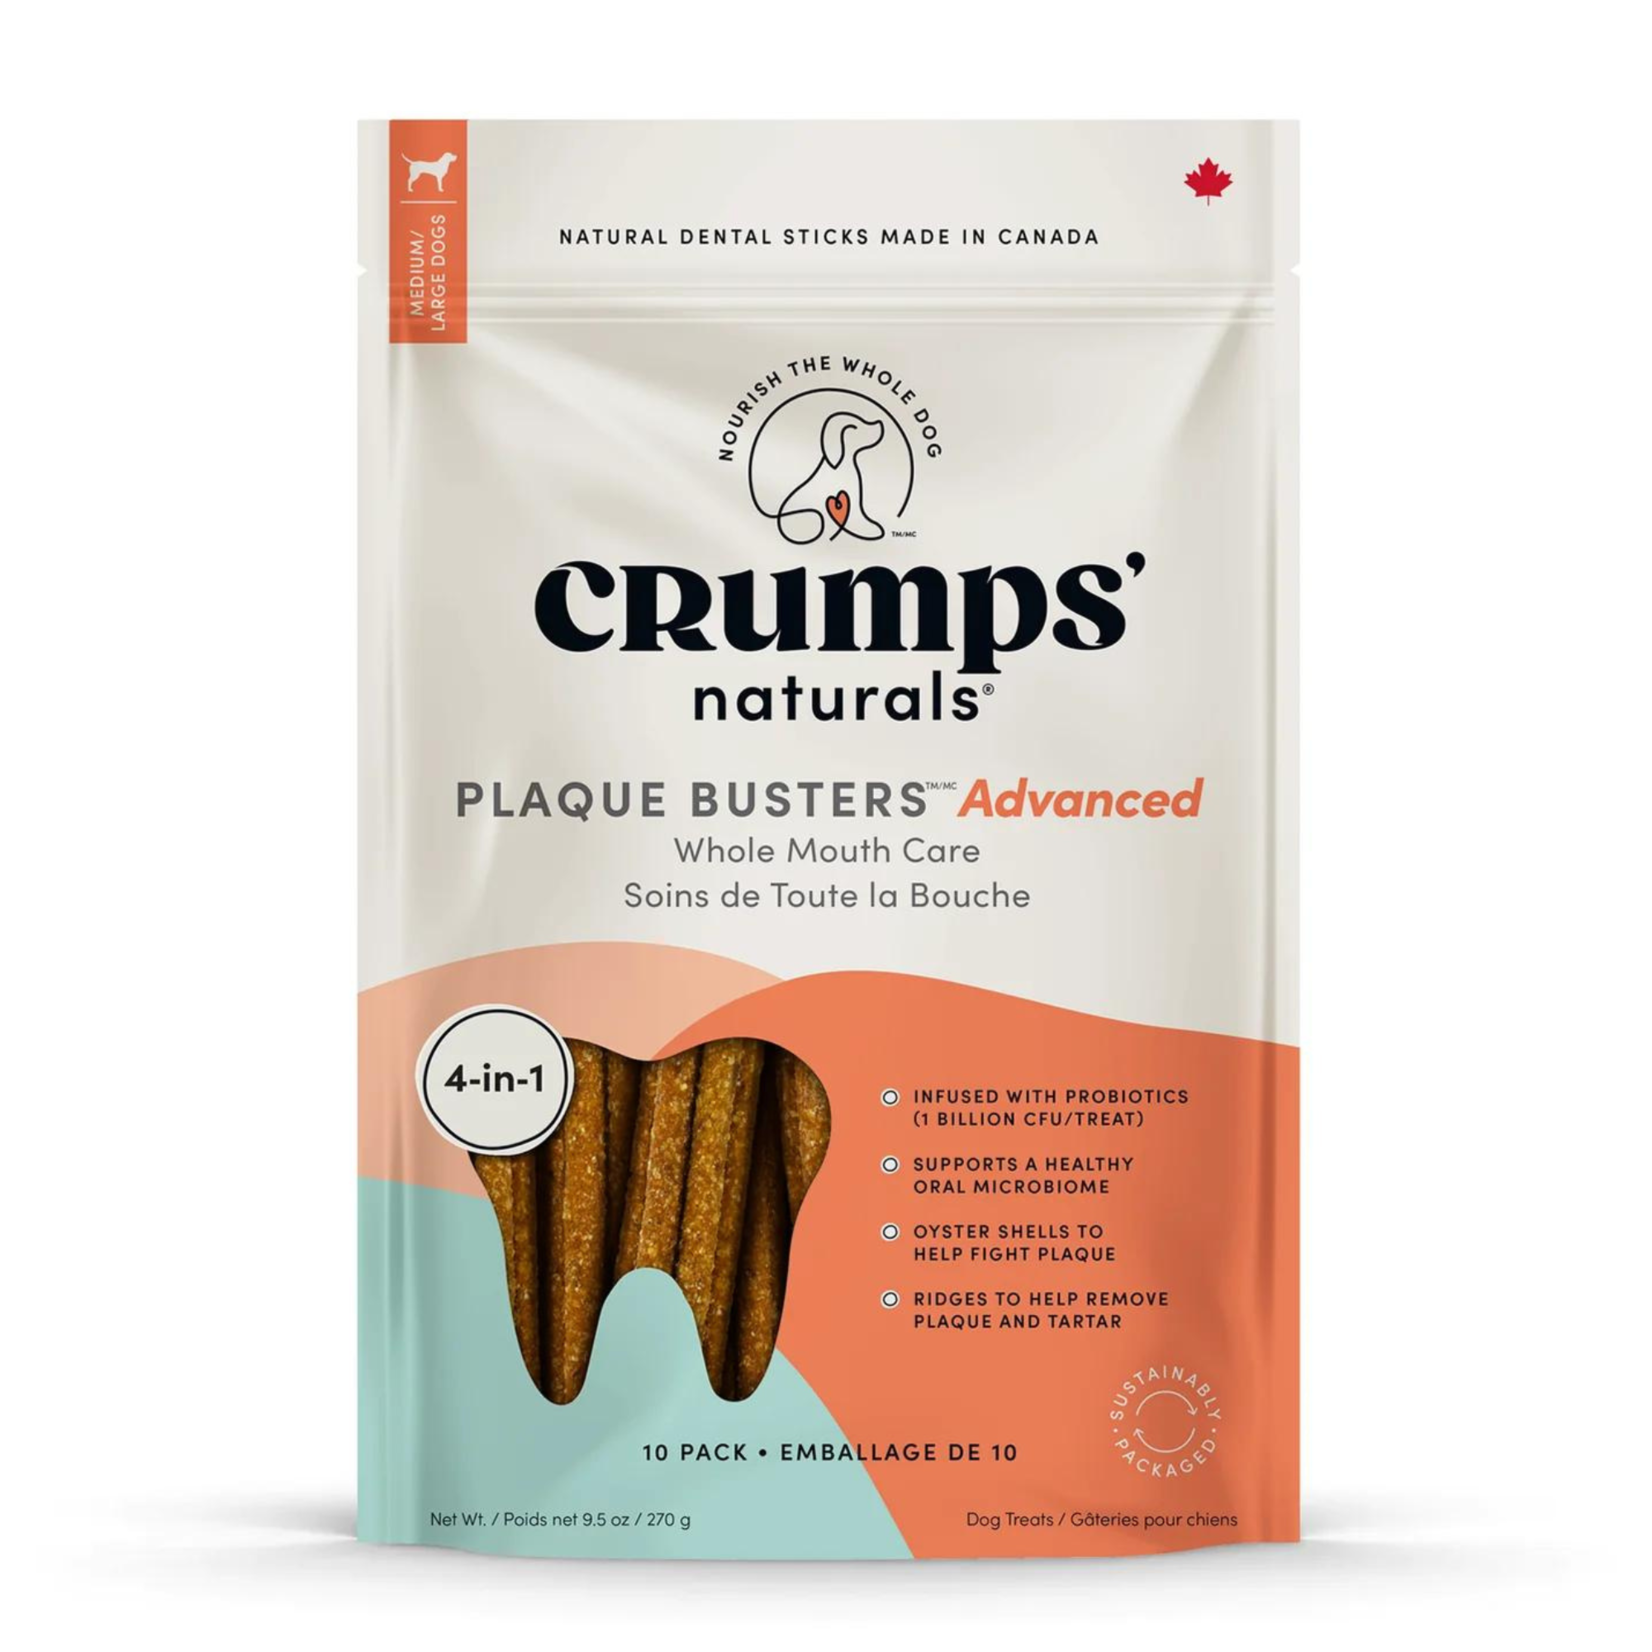 Crumps' Naturals Crumps': Plaque Busters Advanced: Probiotic Dental Sticks 10pc